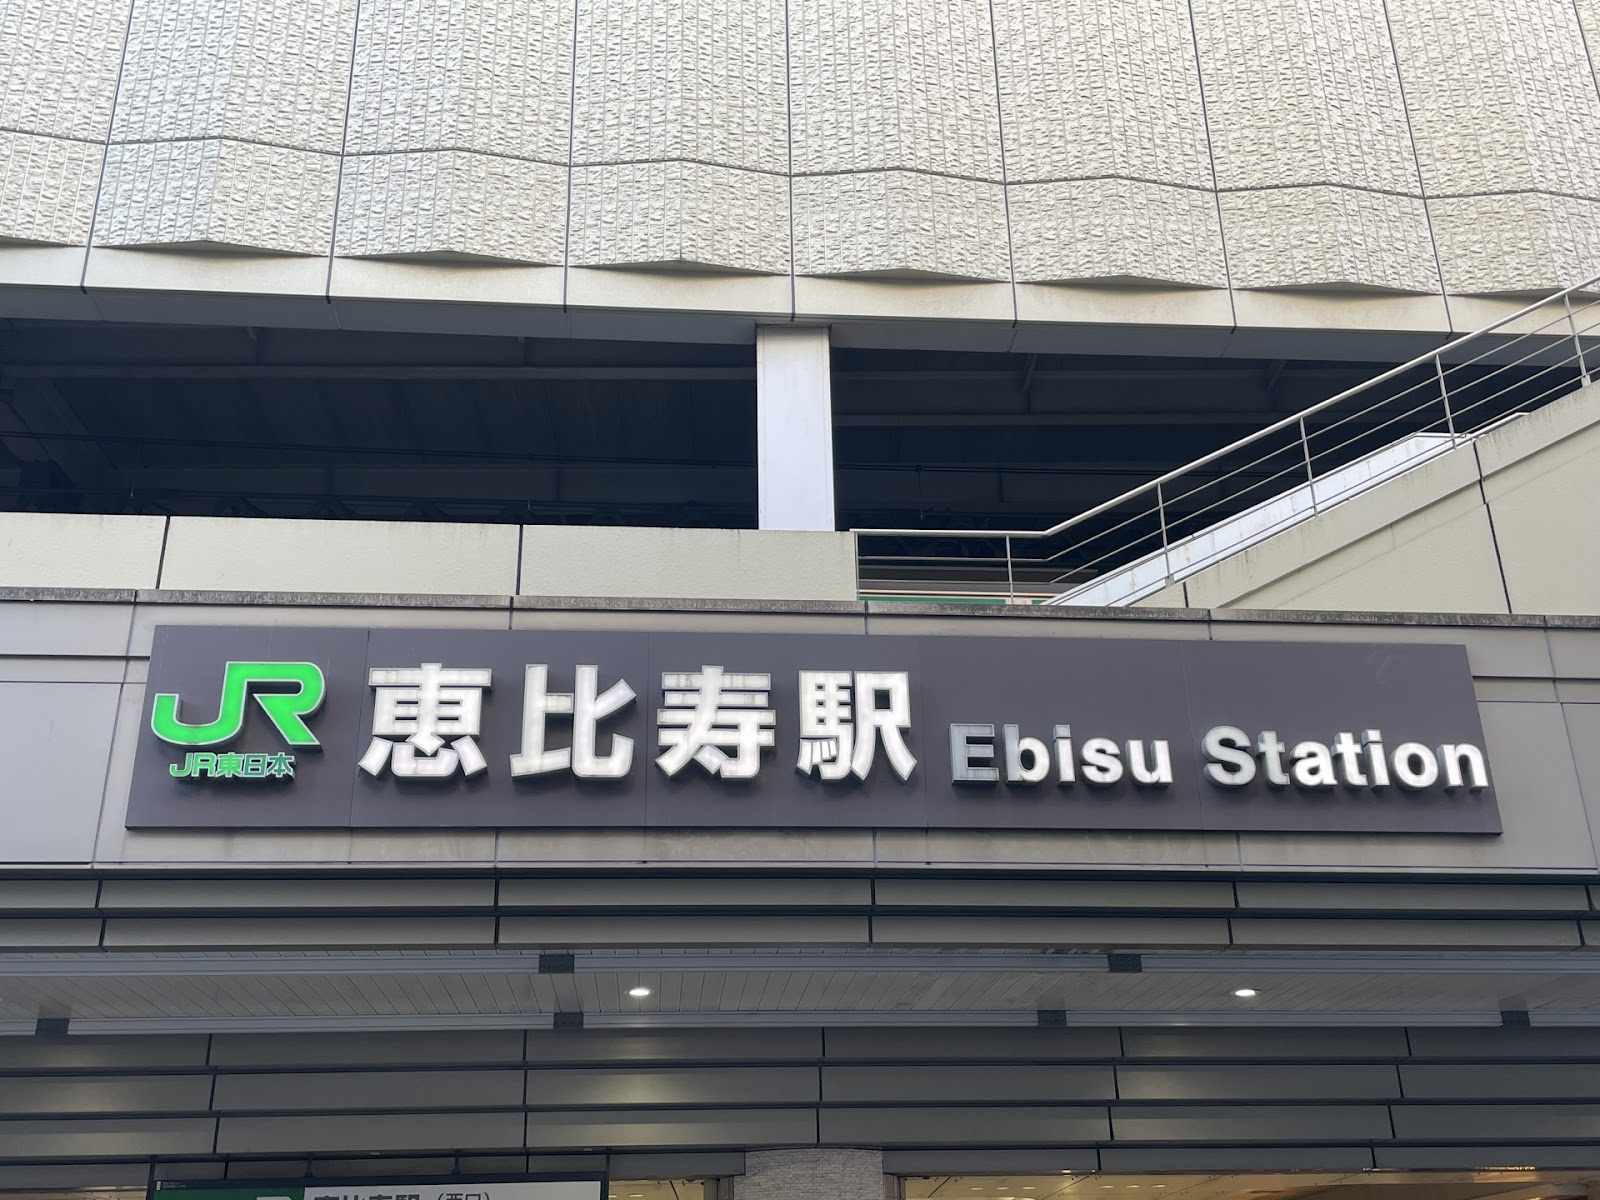 恵比寿駅周辺のスマホ充電・モバイルバッテリーレンタルスポット | コラム